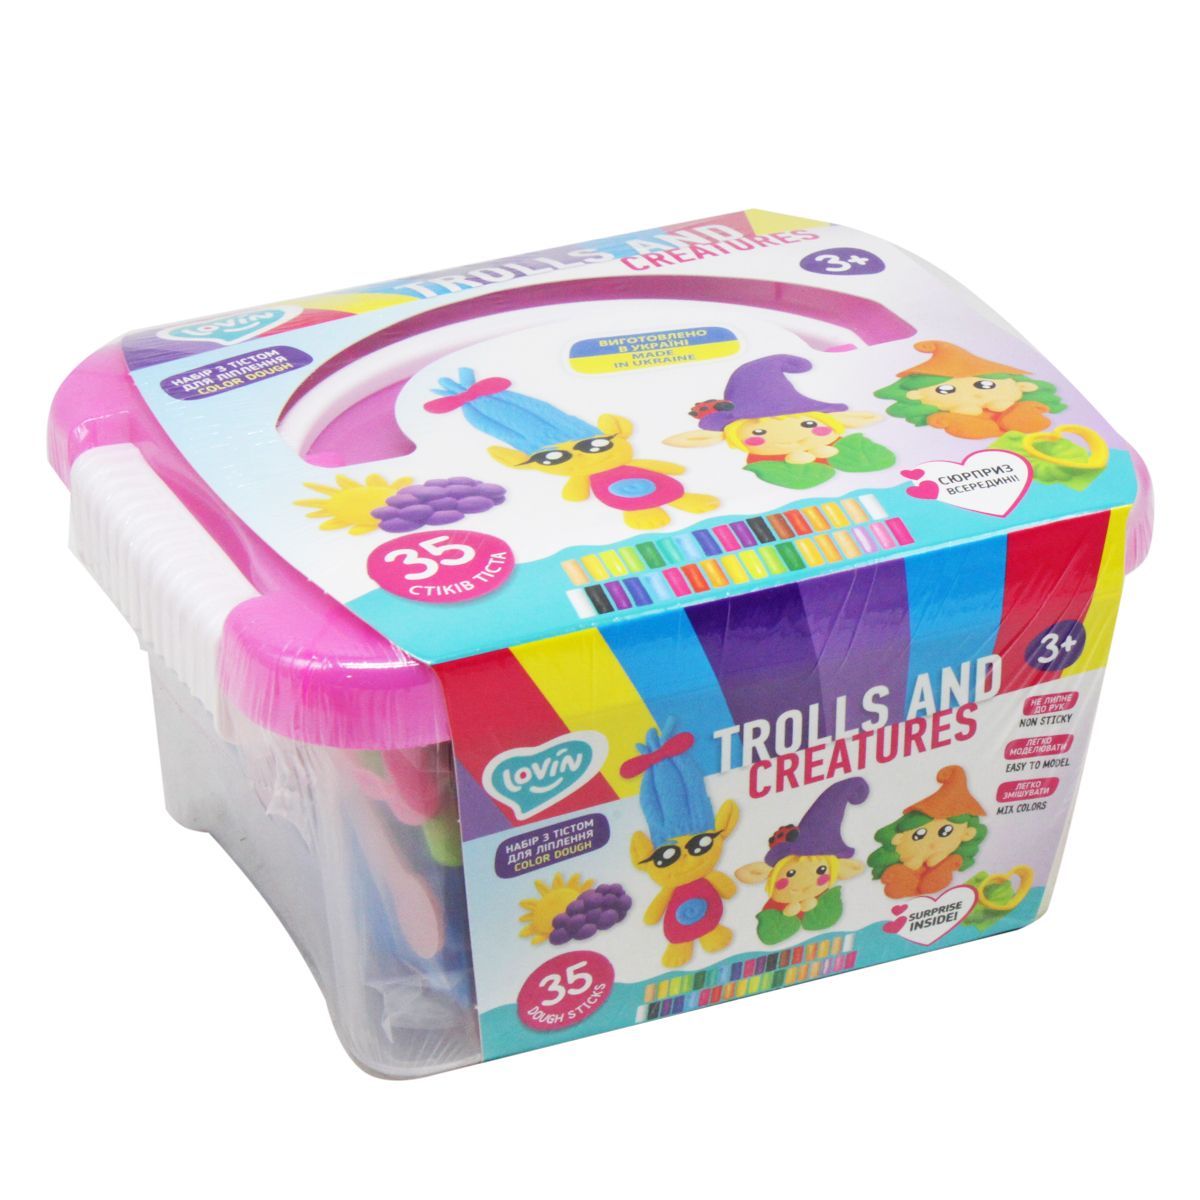 Trolls and creatures box ТМ Lovin Набір для ліплення з тістом - купить в магазине Plus-Plus по цене 435 грн.